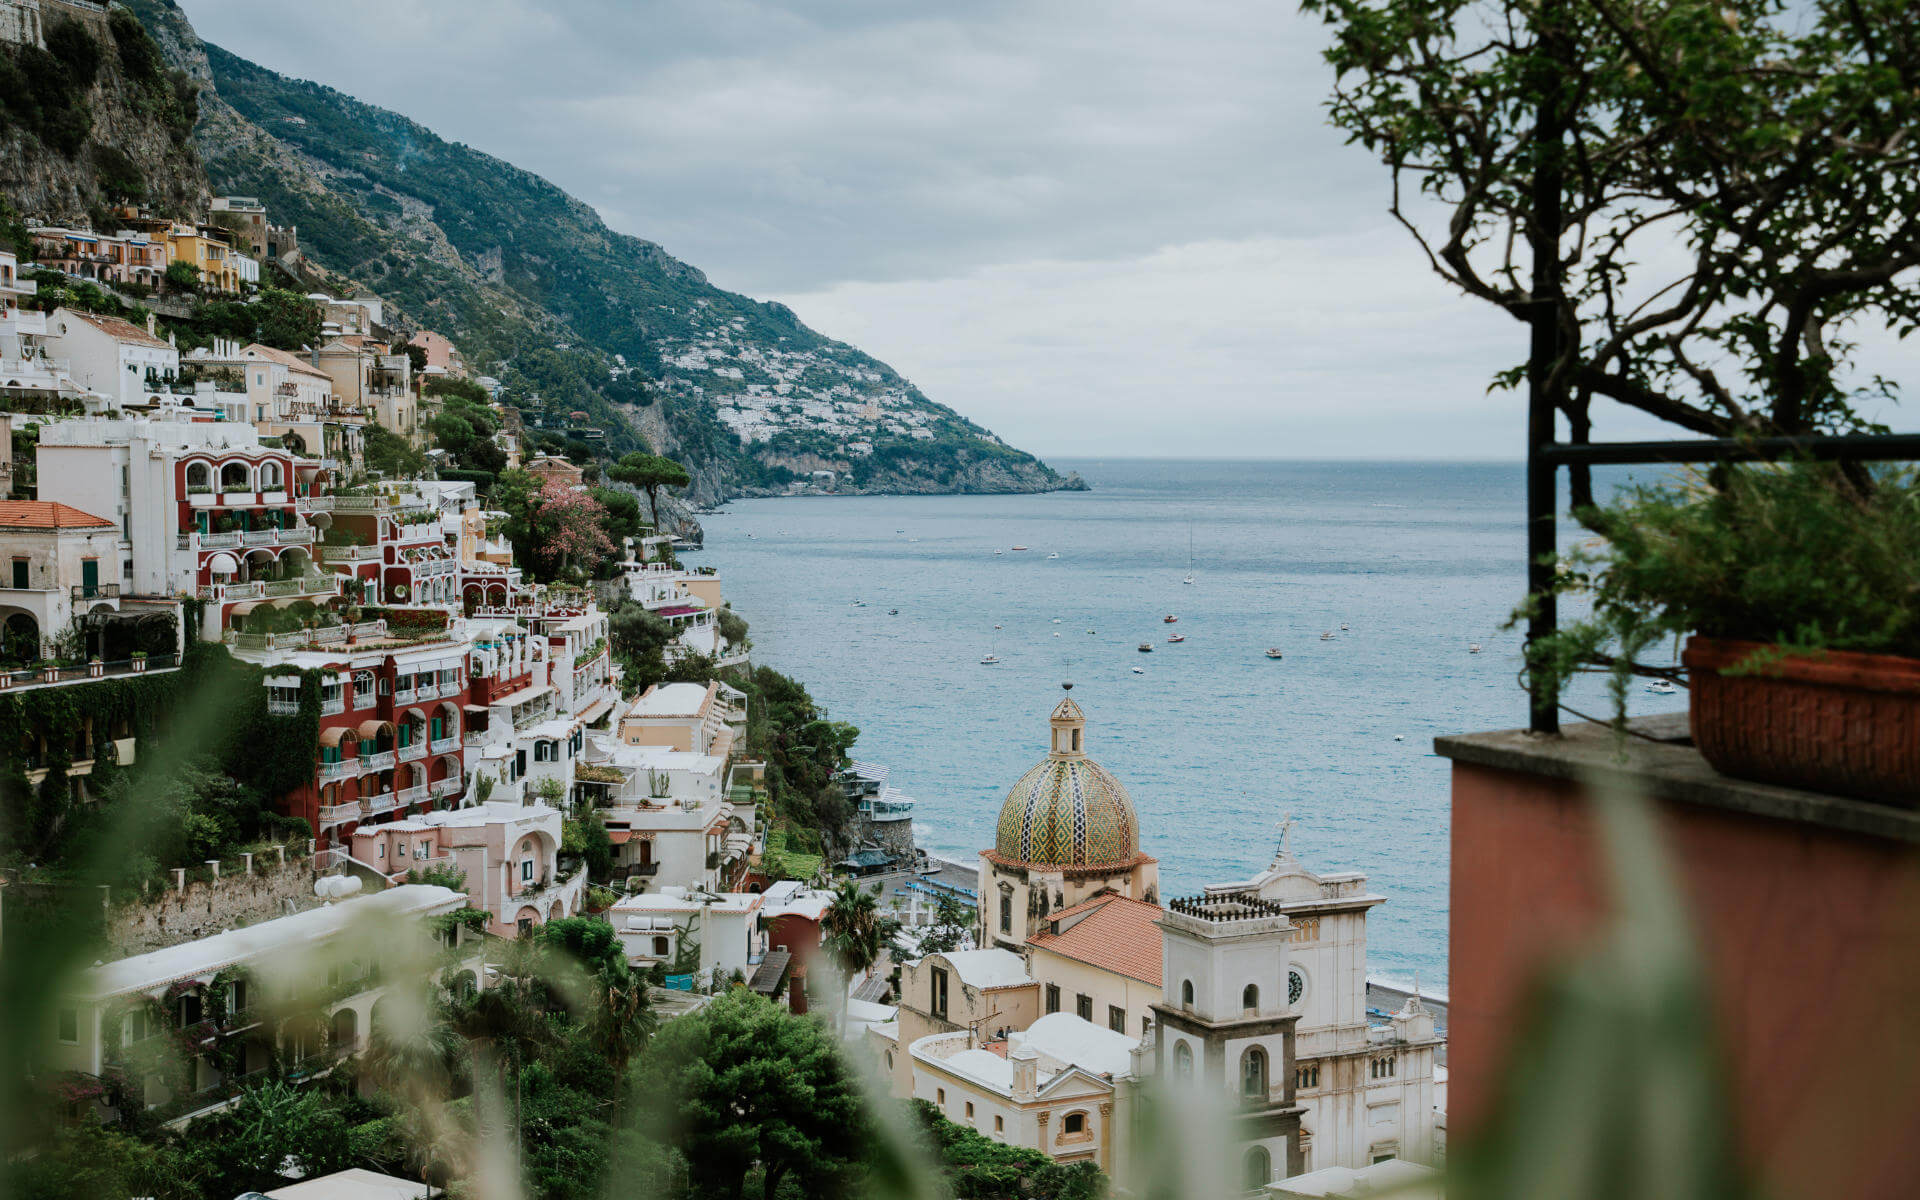 Blick auf die Häuser und das Meer von Positano an der italienischen Amalfiküste.